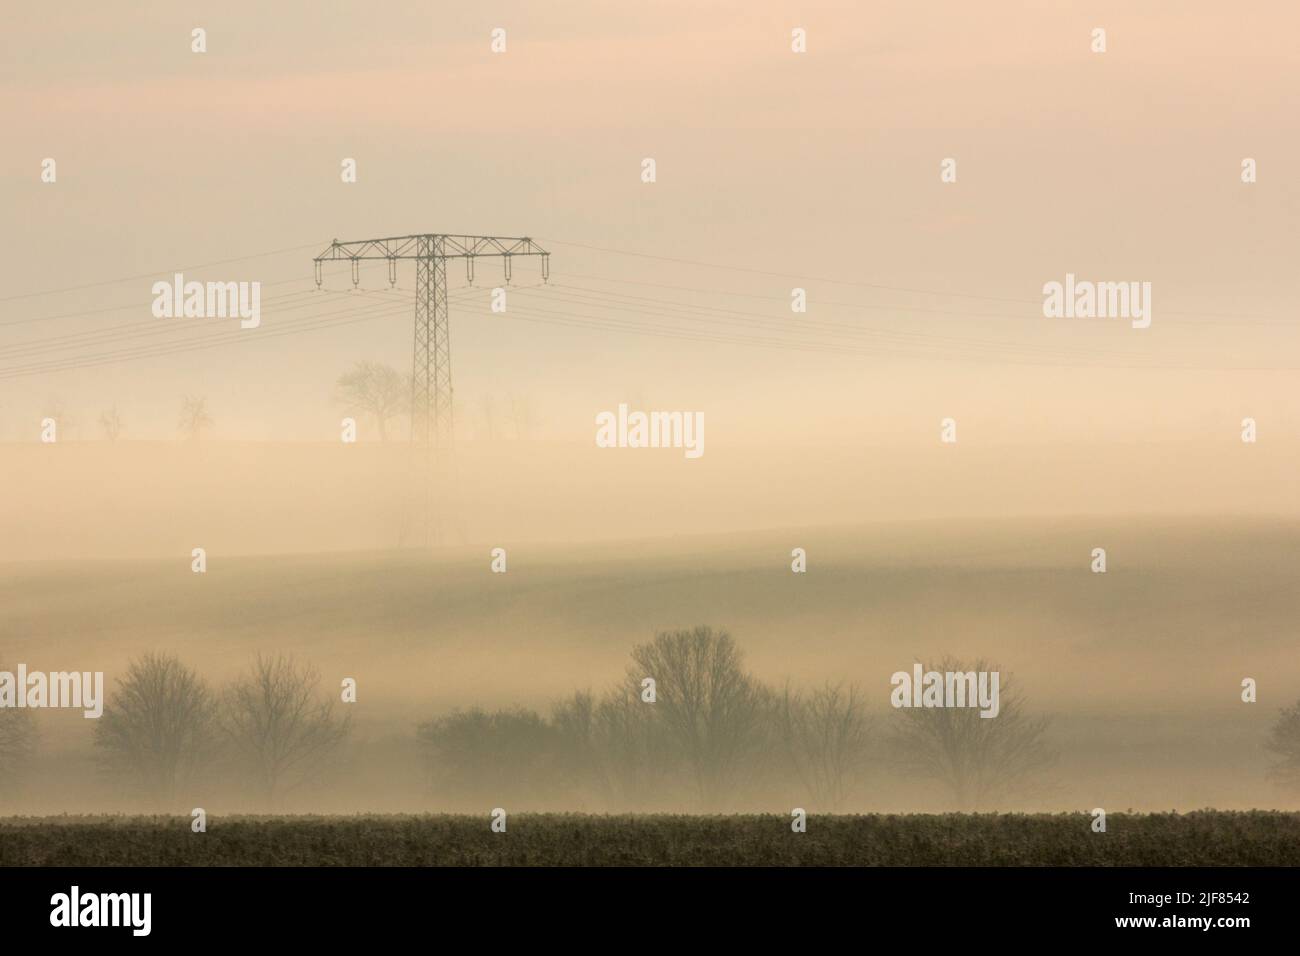 Silhouetten von Bäumen und einem Hochspannungsmast im Nebel an einem Morgen im Herbst, Silhouettes de árboles y pilón de alta tensión en la mañana con niebla Foto de stock